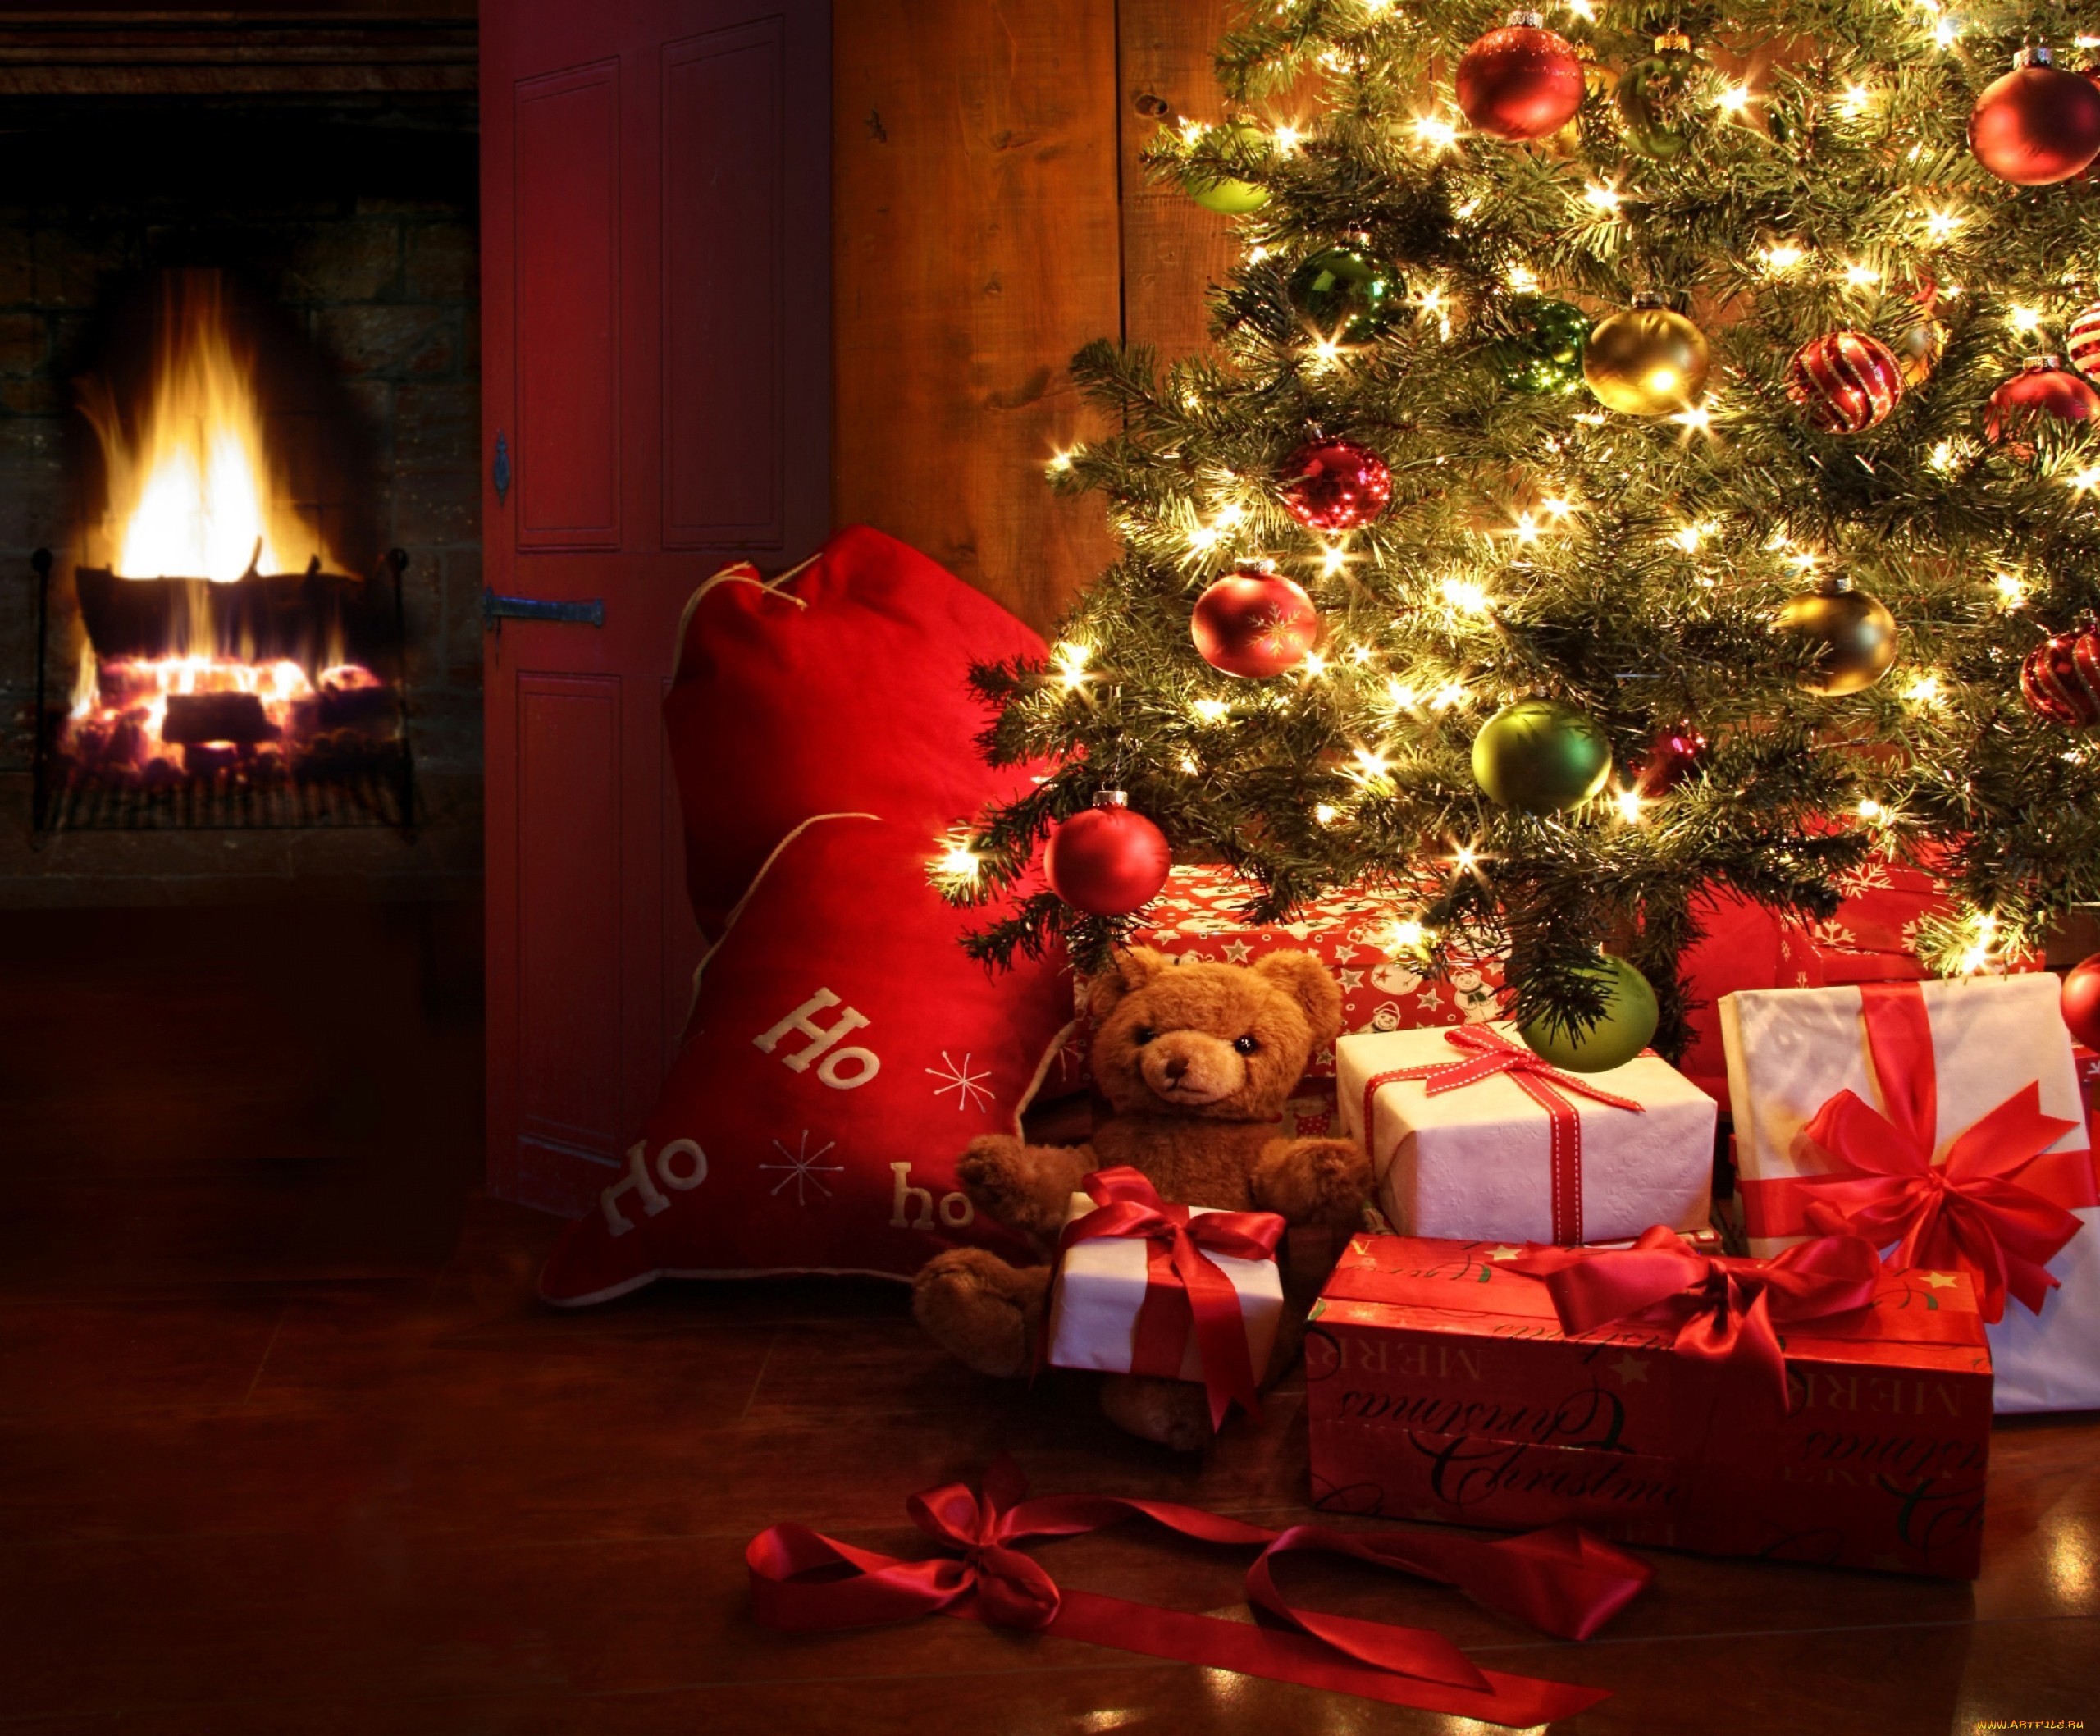 Скачать обои бесплатно Праздники, Рождество (Christmas Xmas), Новый Год (New Year) картинка на рабочий стол ПК